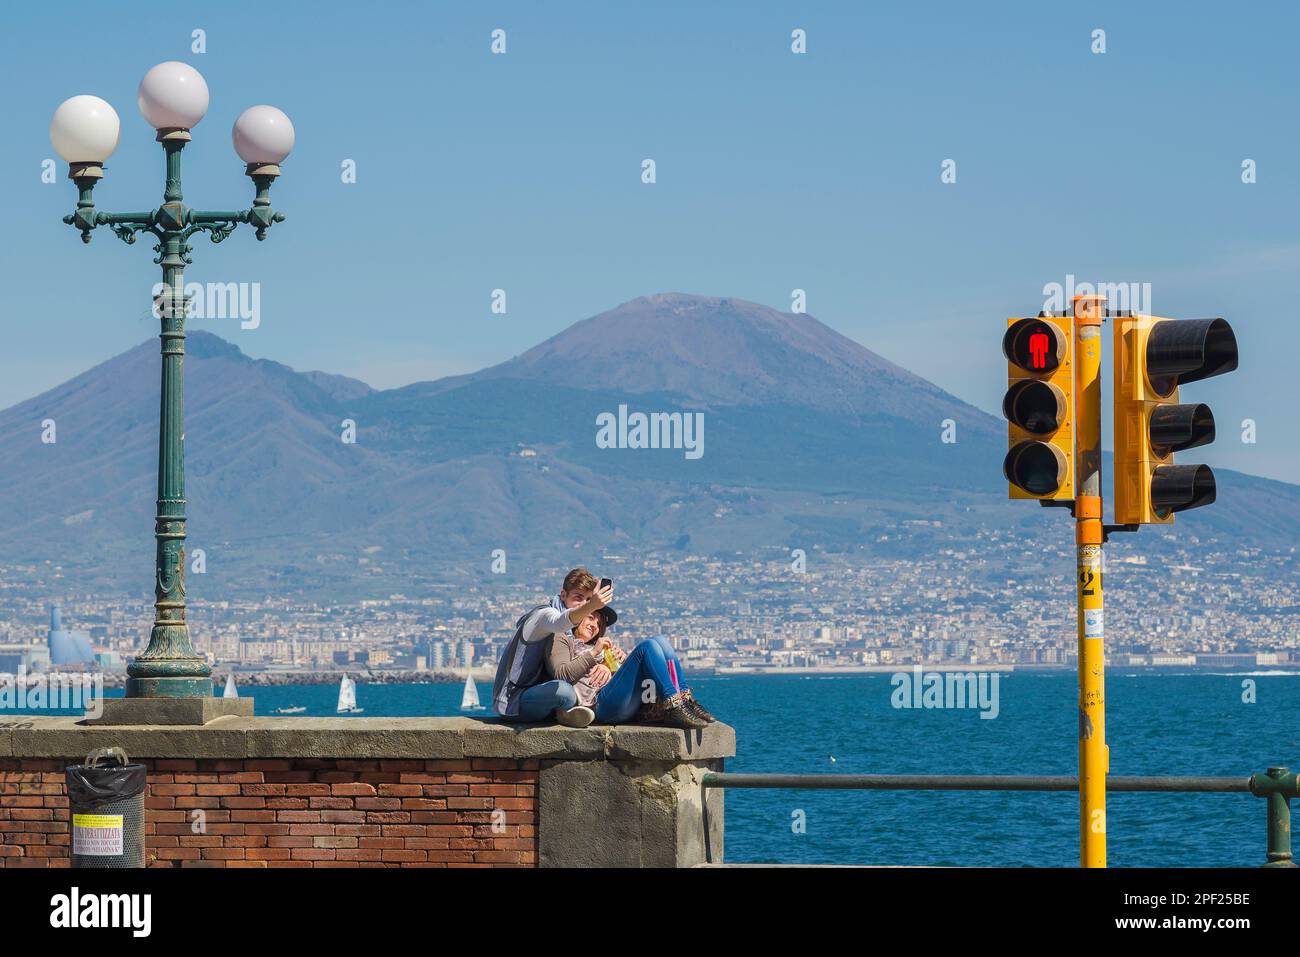 Adolescents heureux couple, vue en été d'un jeune couple prenant une photo de selfie d'eux-mêmes contre la baie de Naples et le Vésuve, Italie Banque D'Images